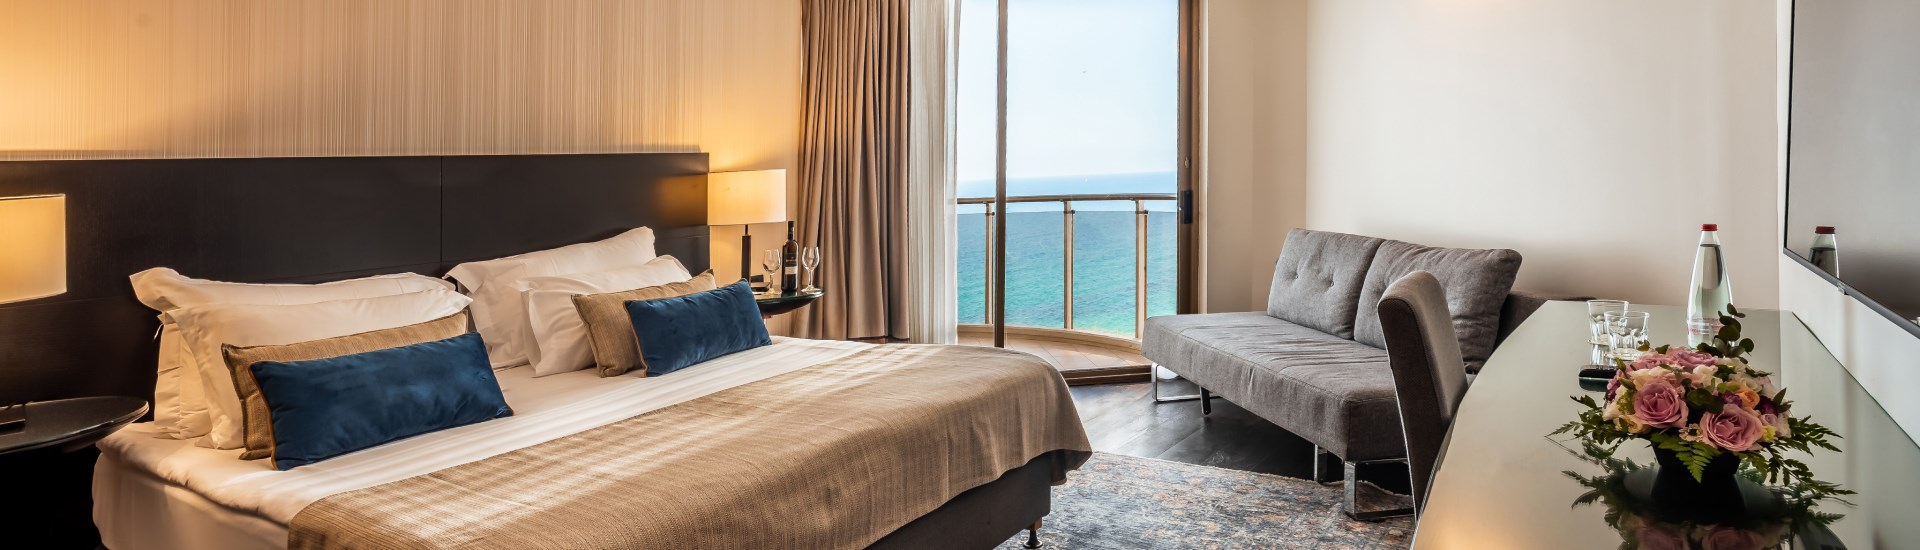 מלון דניאל הרצליה - חדר מפנק עם נוף לים